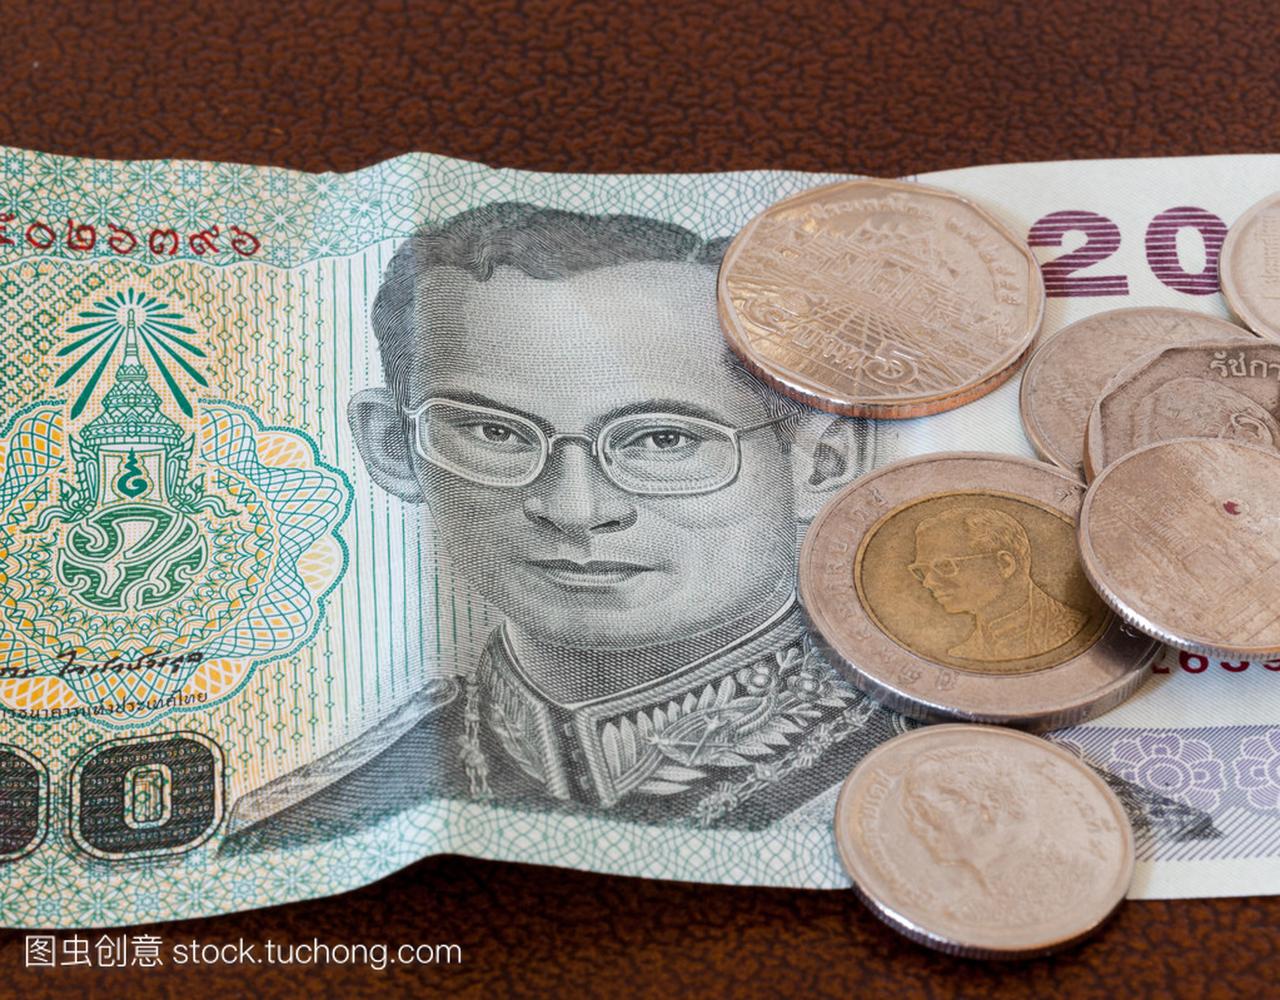 塑胶做的！新版20泰铢钞票亮相 预计3月开放兑换 - Vision Thai 看见泰国